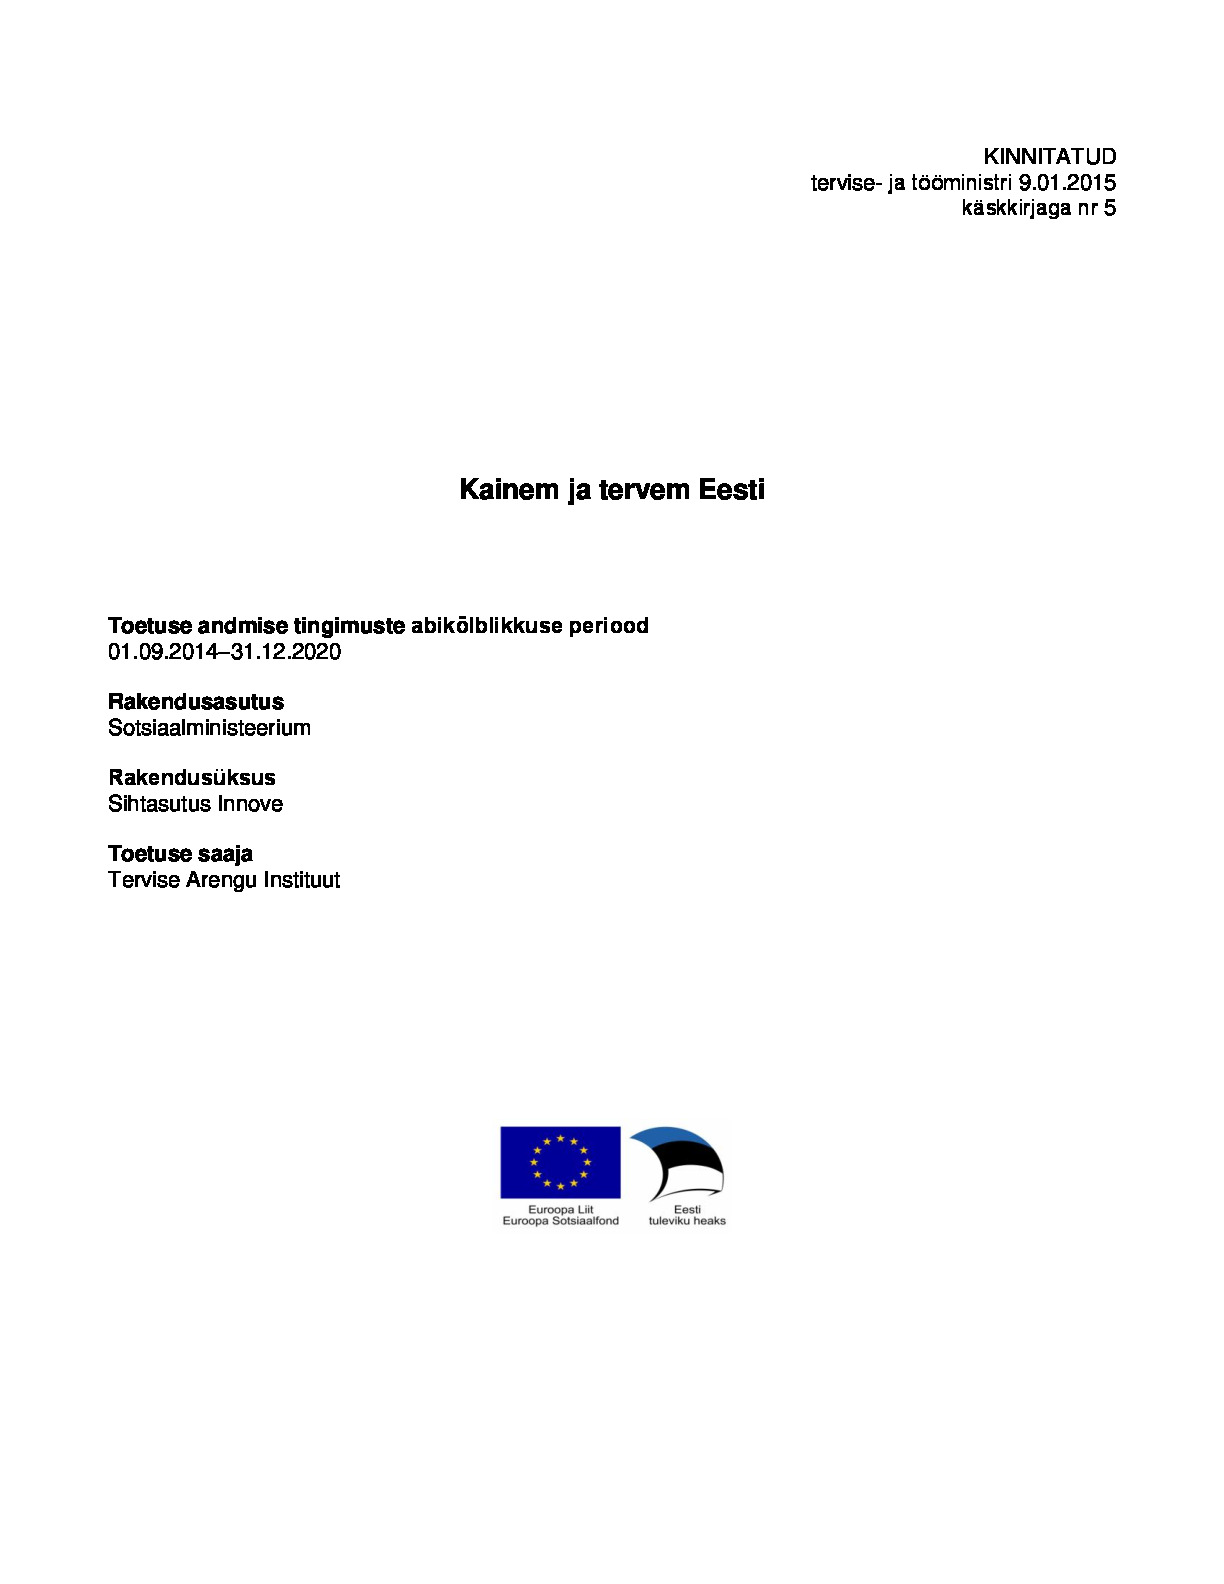 Kainem ja tervem Eesti programm toetuse andmise tingimuste (TAT) kirjeldus